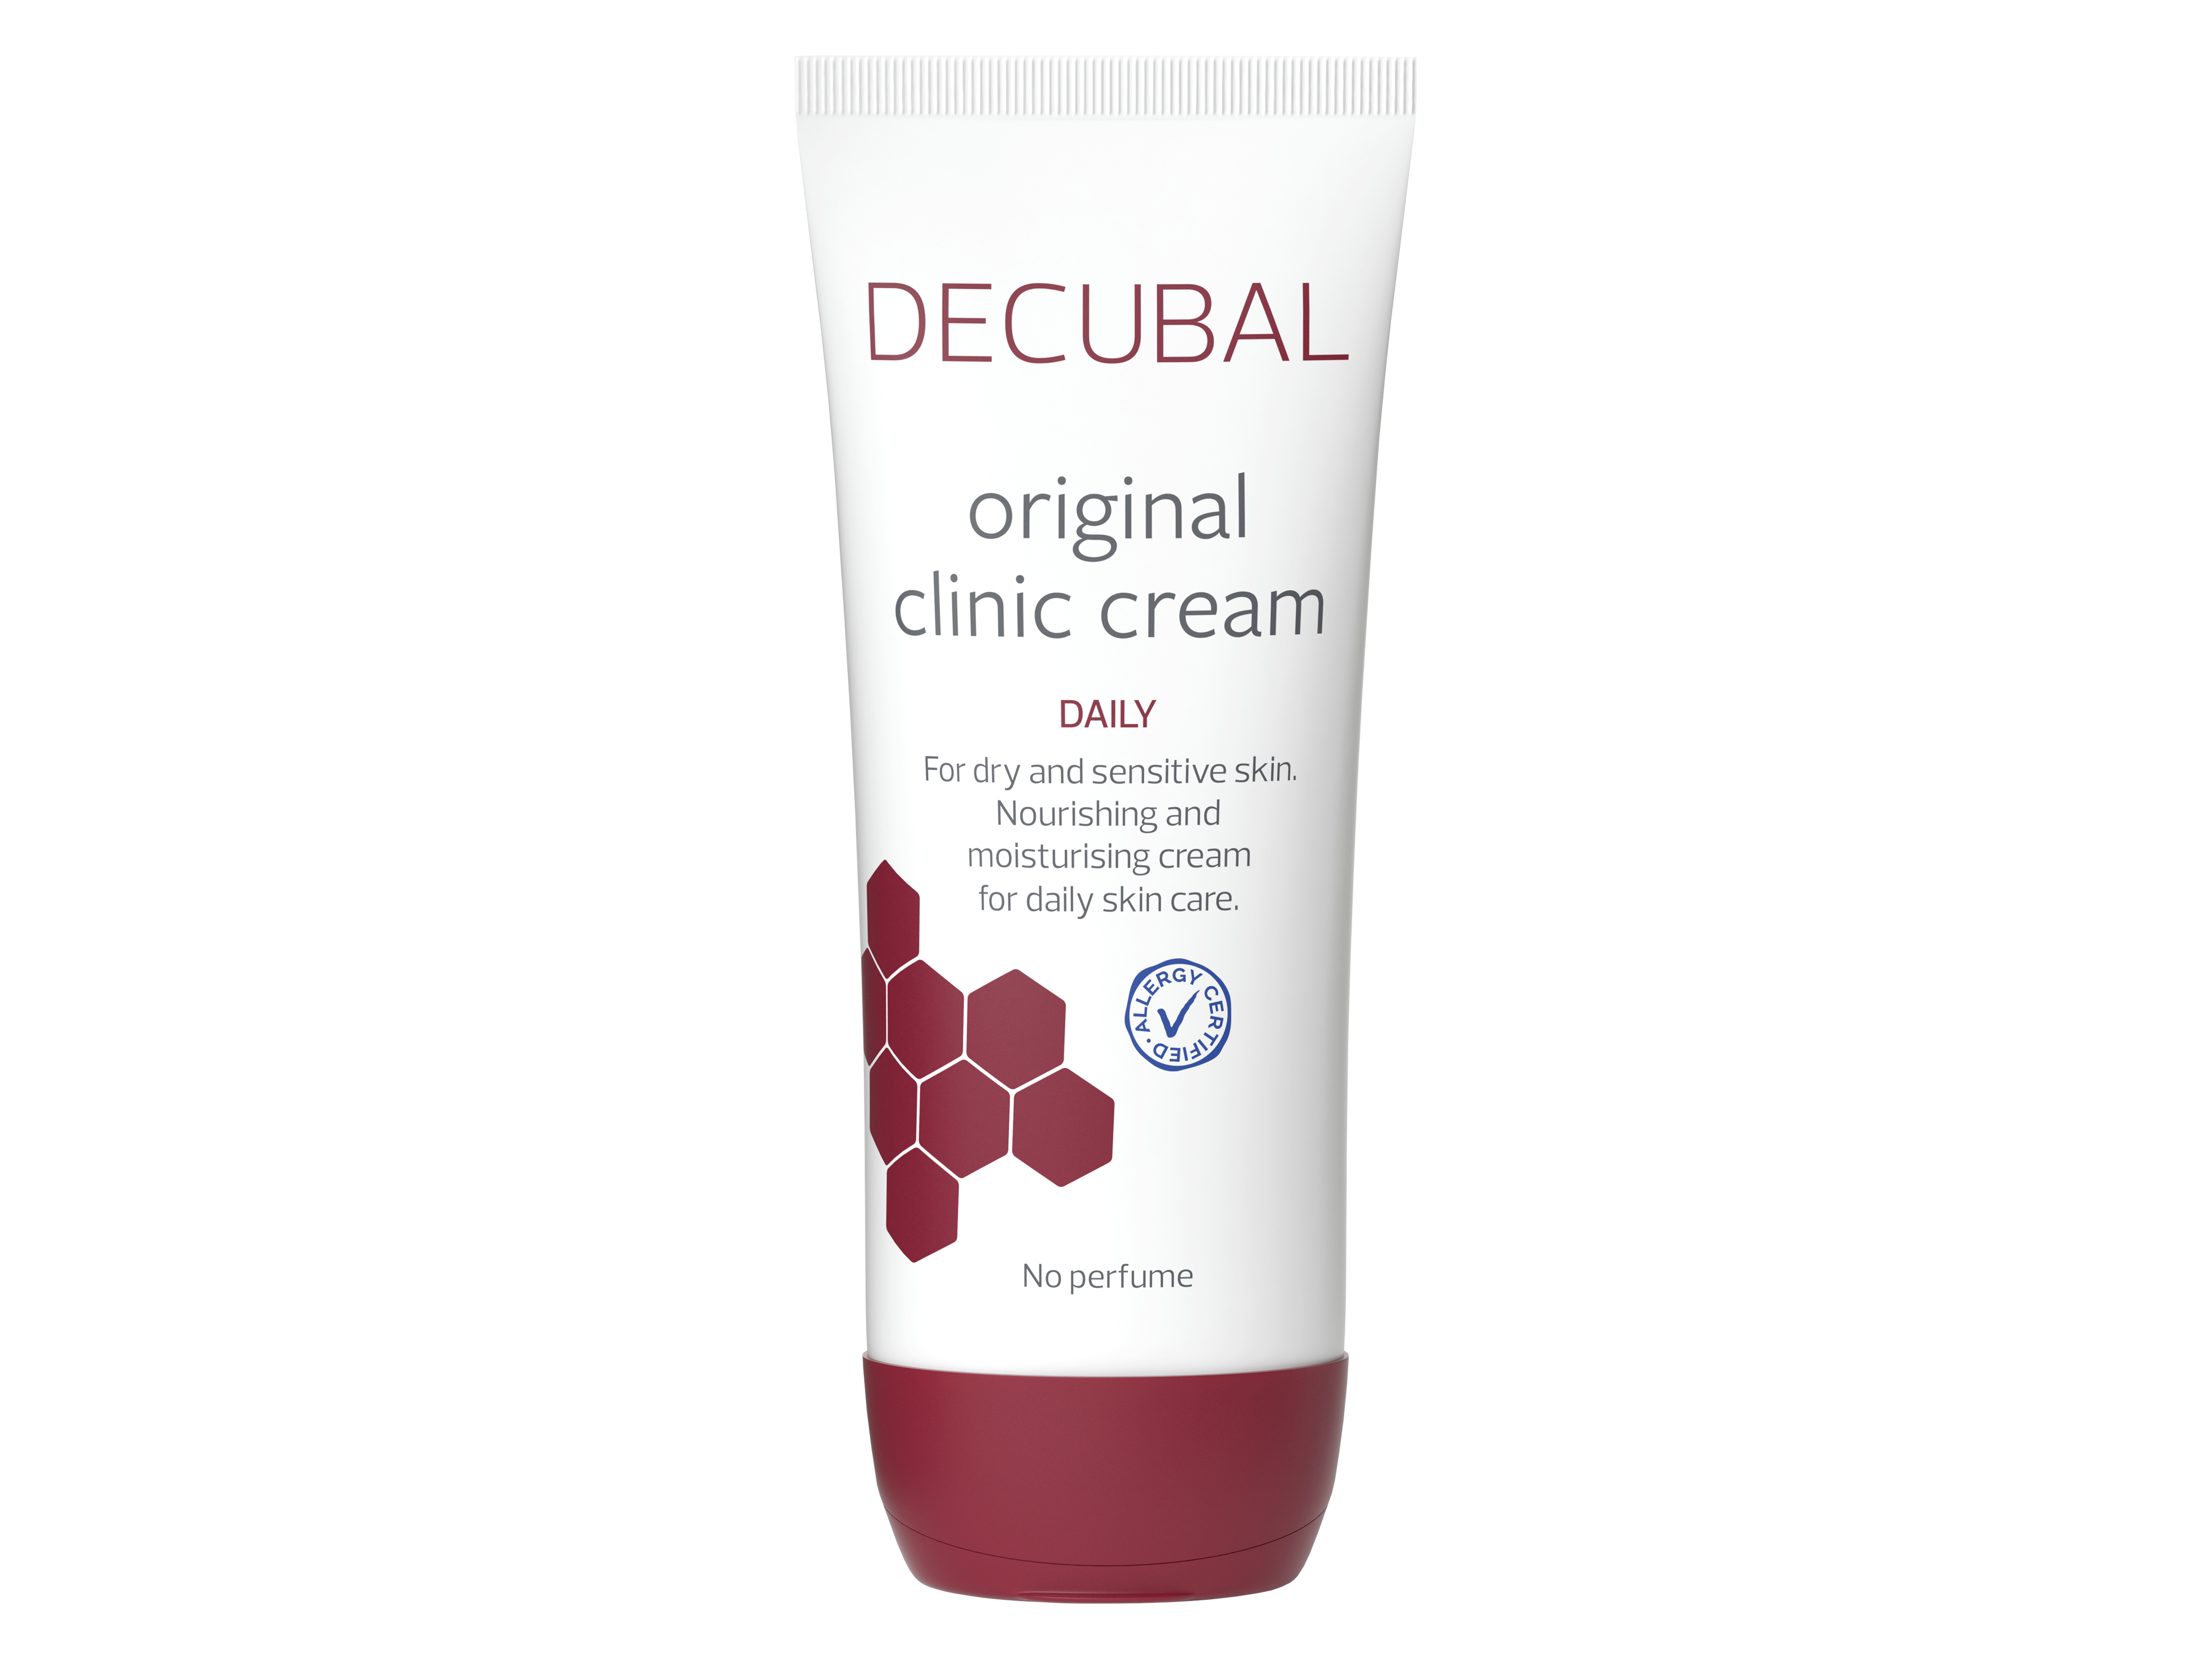 Decubal Original Clinic Cream Daily, 100 gram